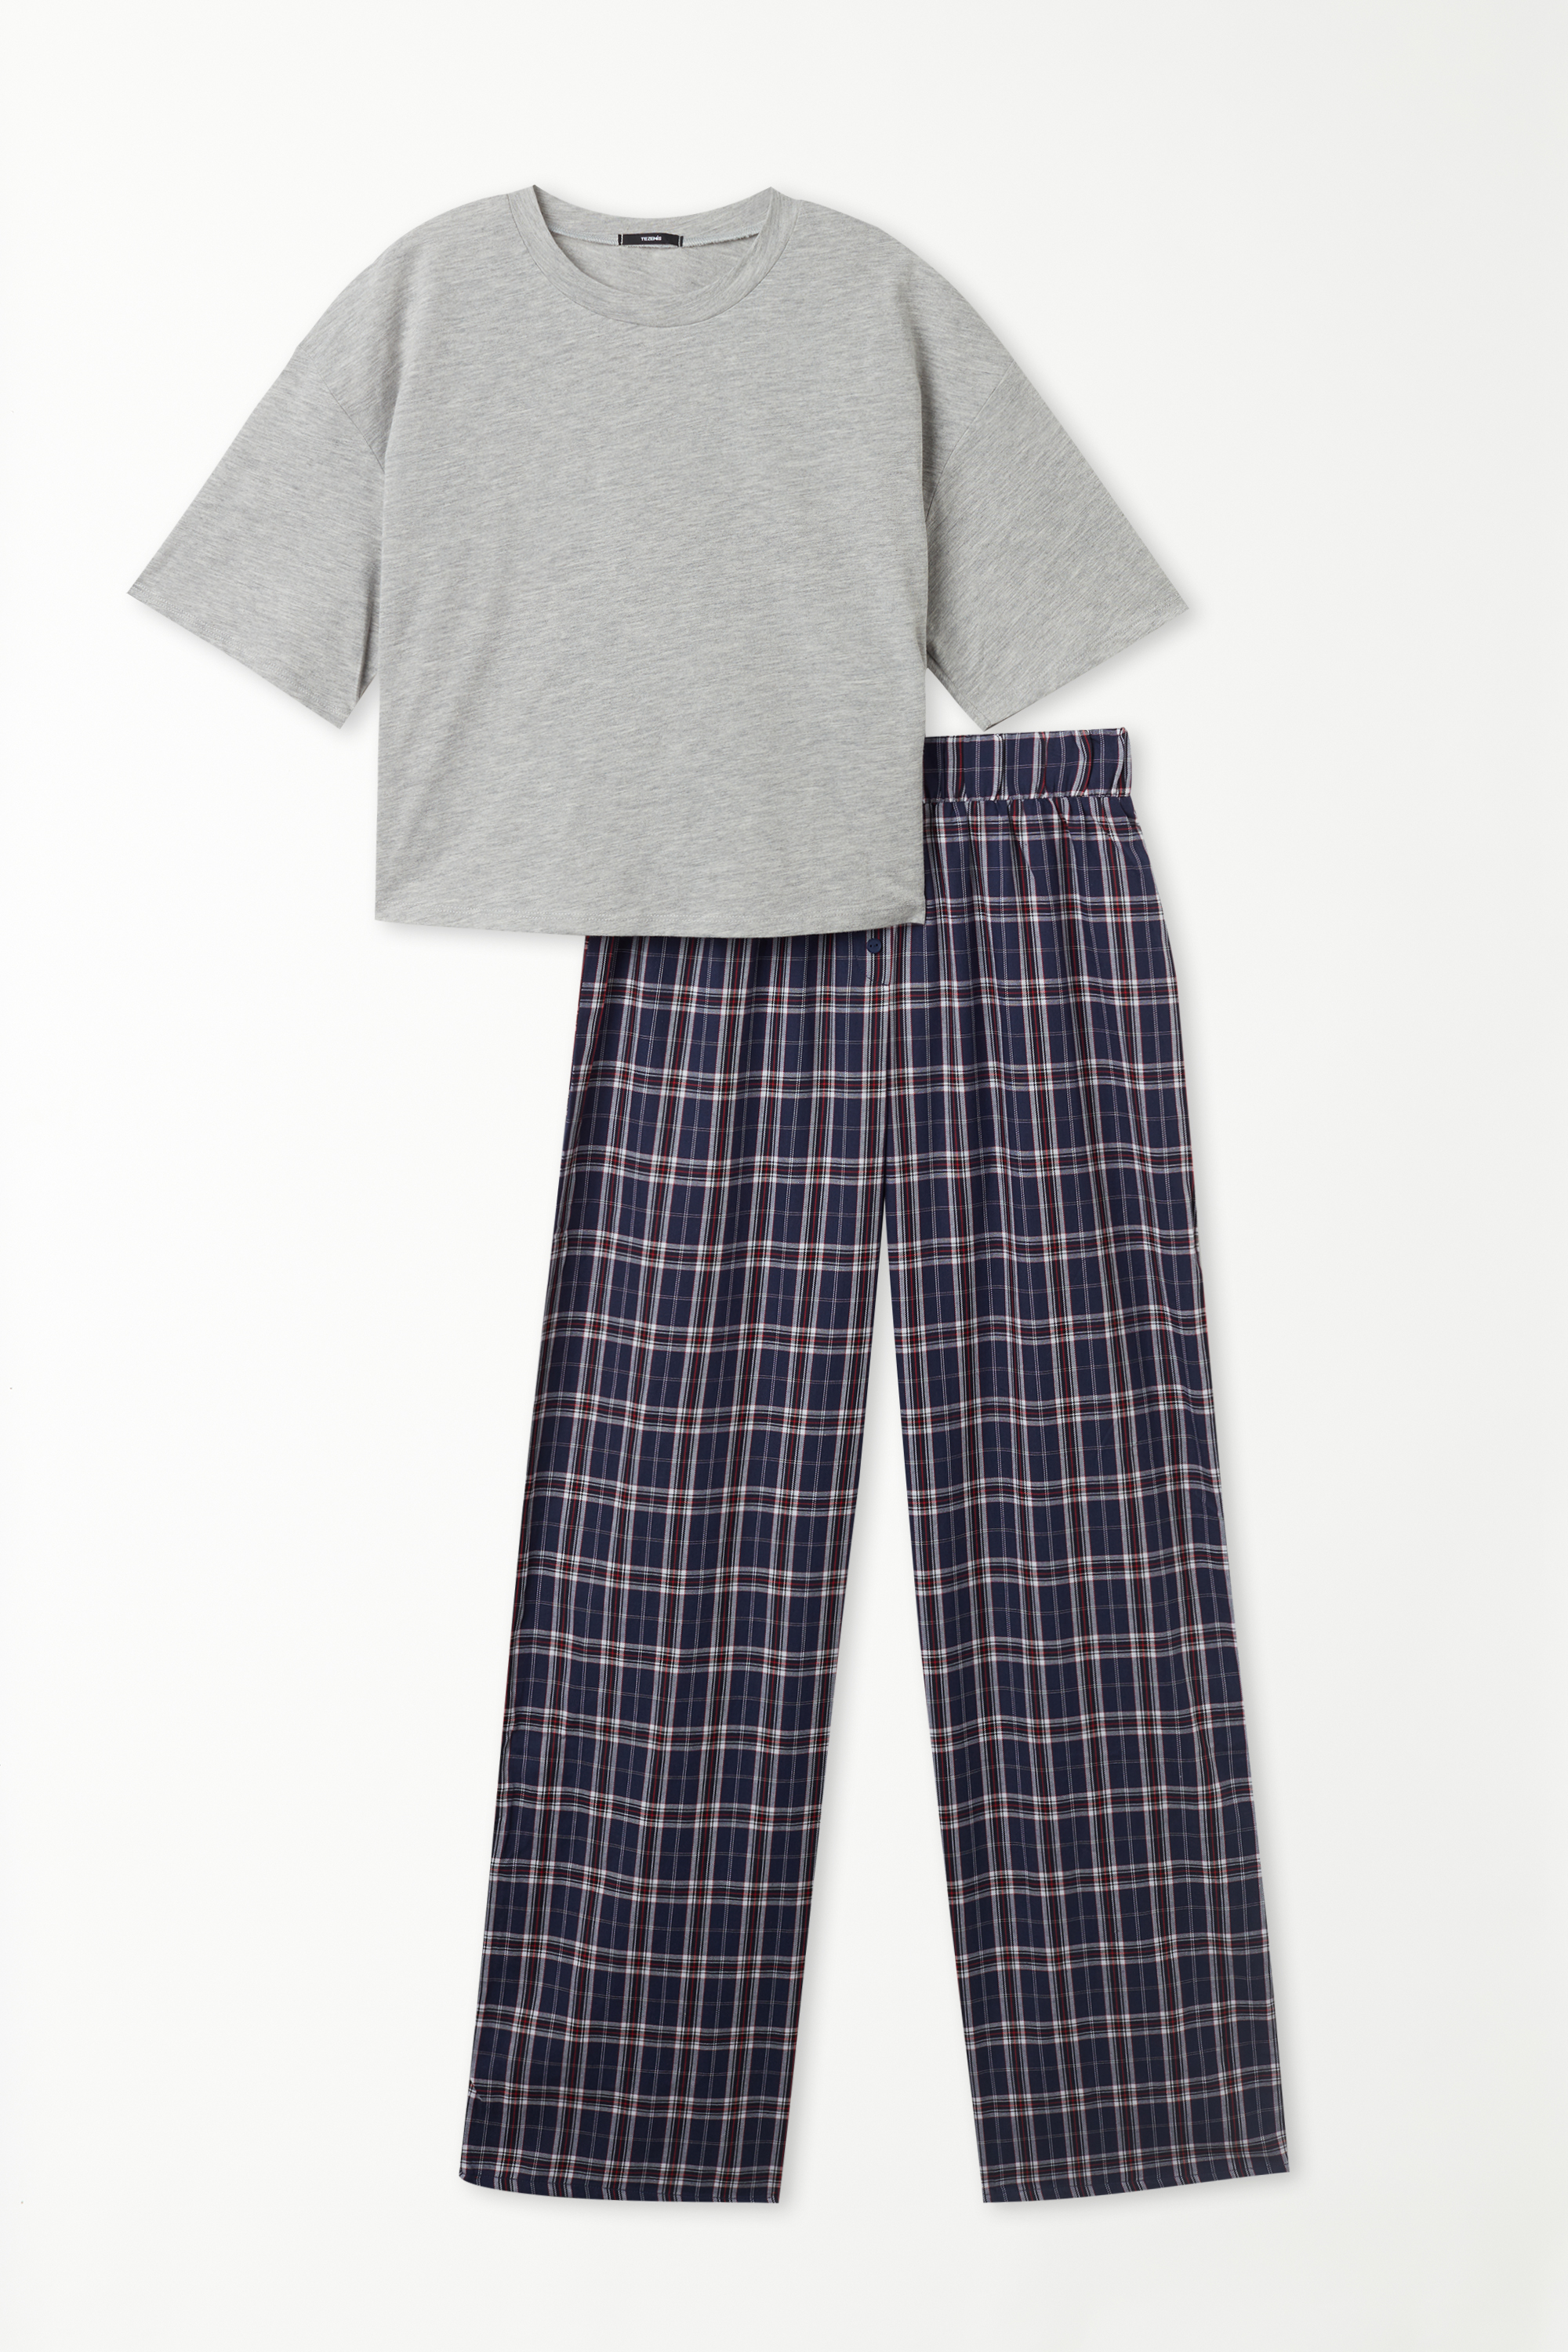 Pijama Meia Manga com Calças Compridas em Tecido